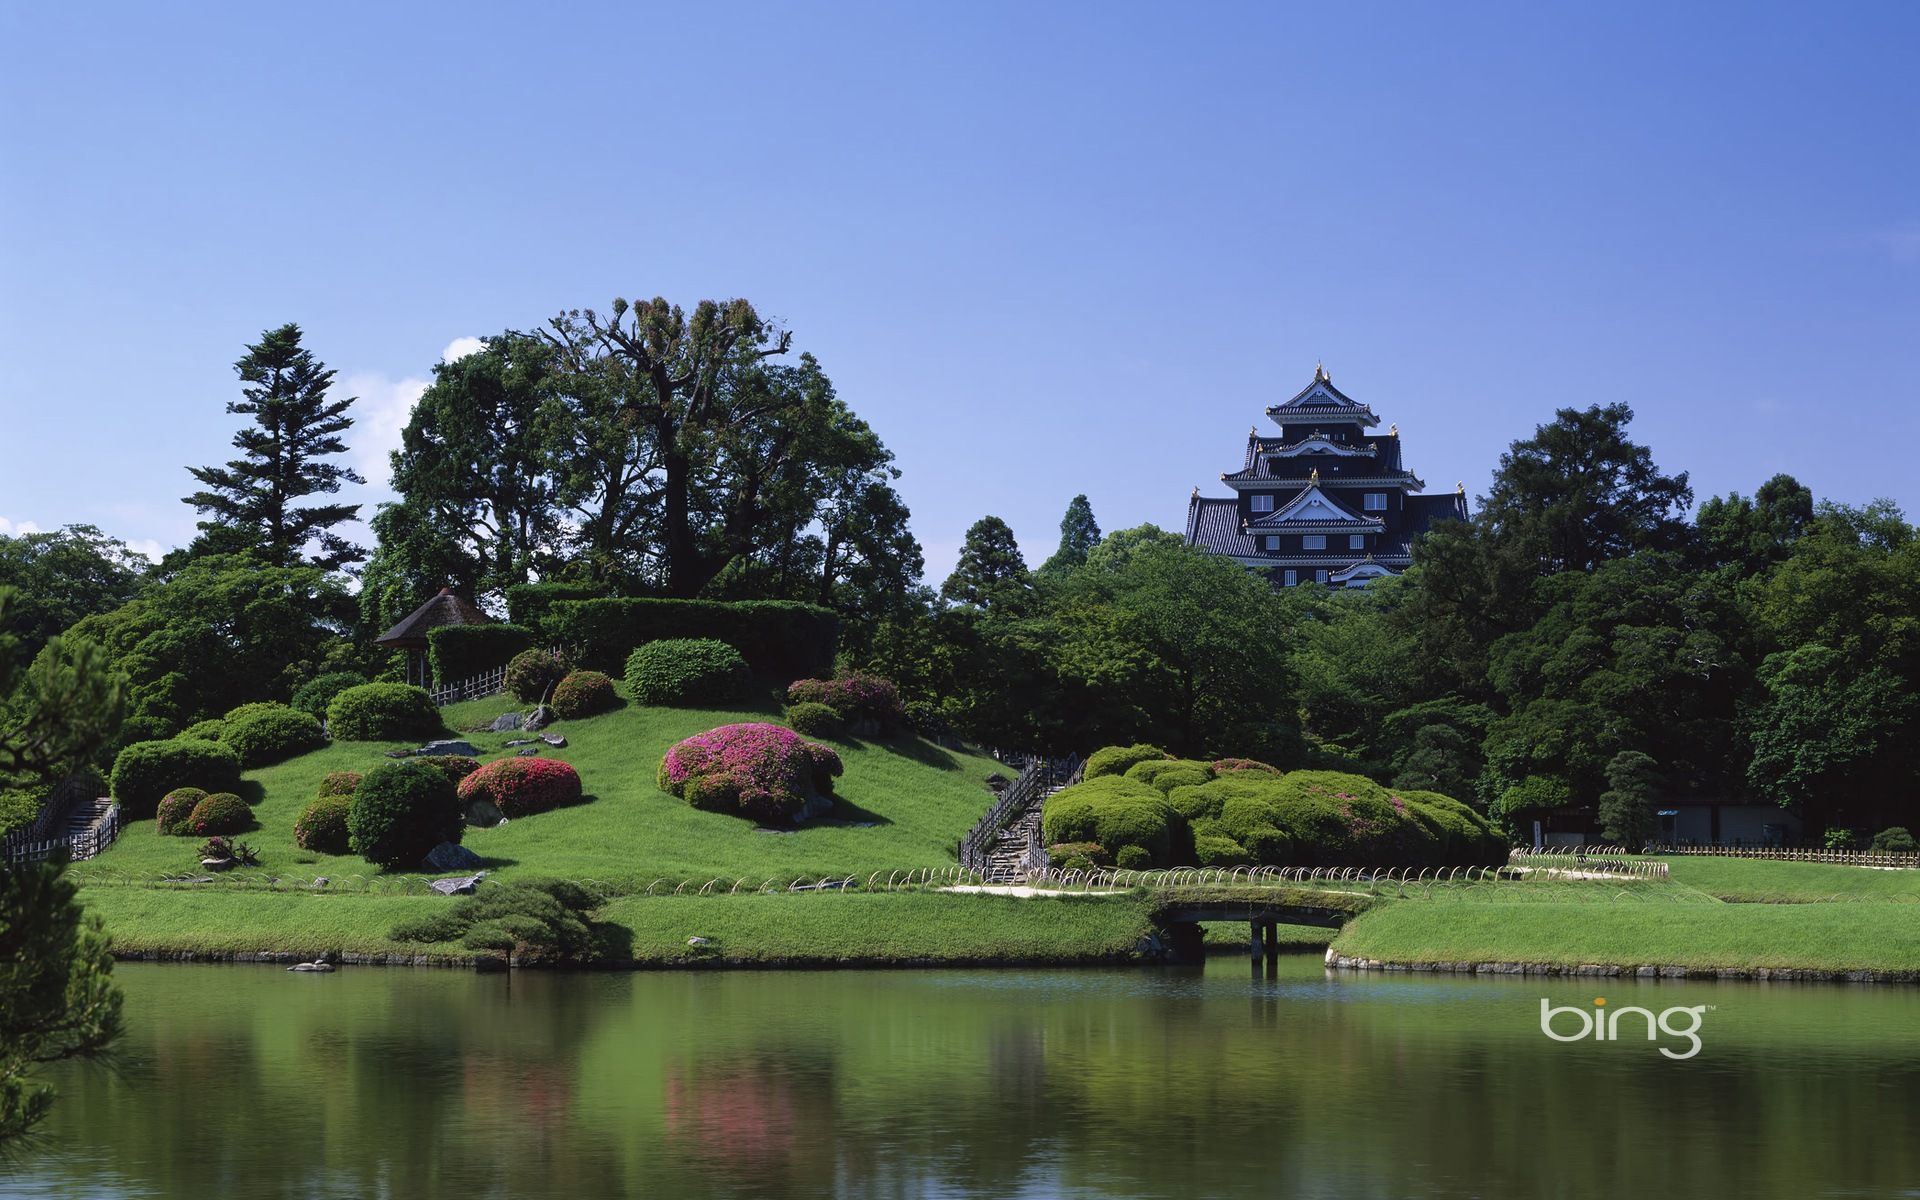 Bing 微软必应高清壁纸：日本风景主题壁纸15 - 1920x1200